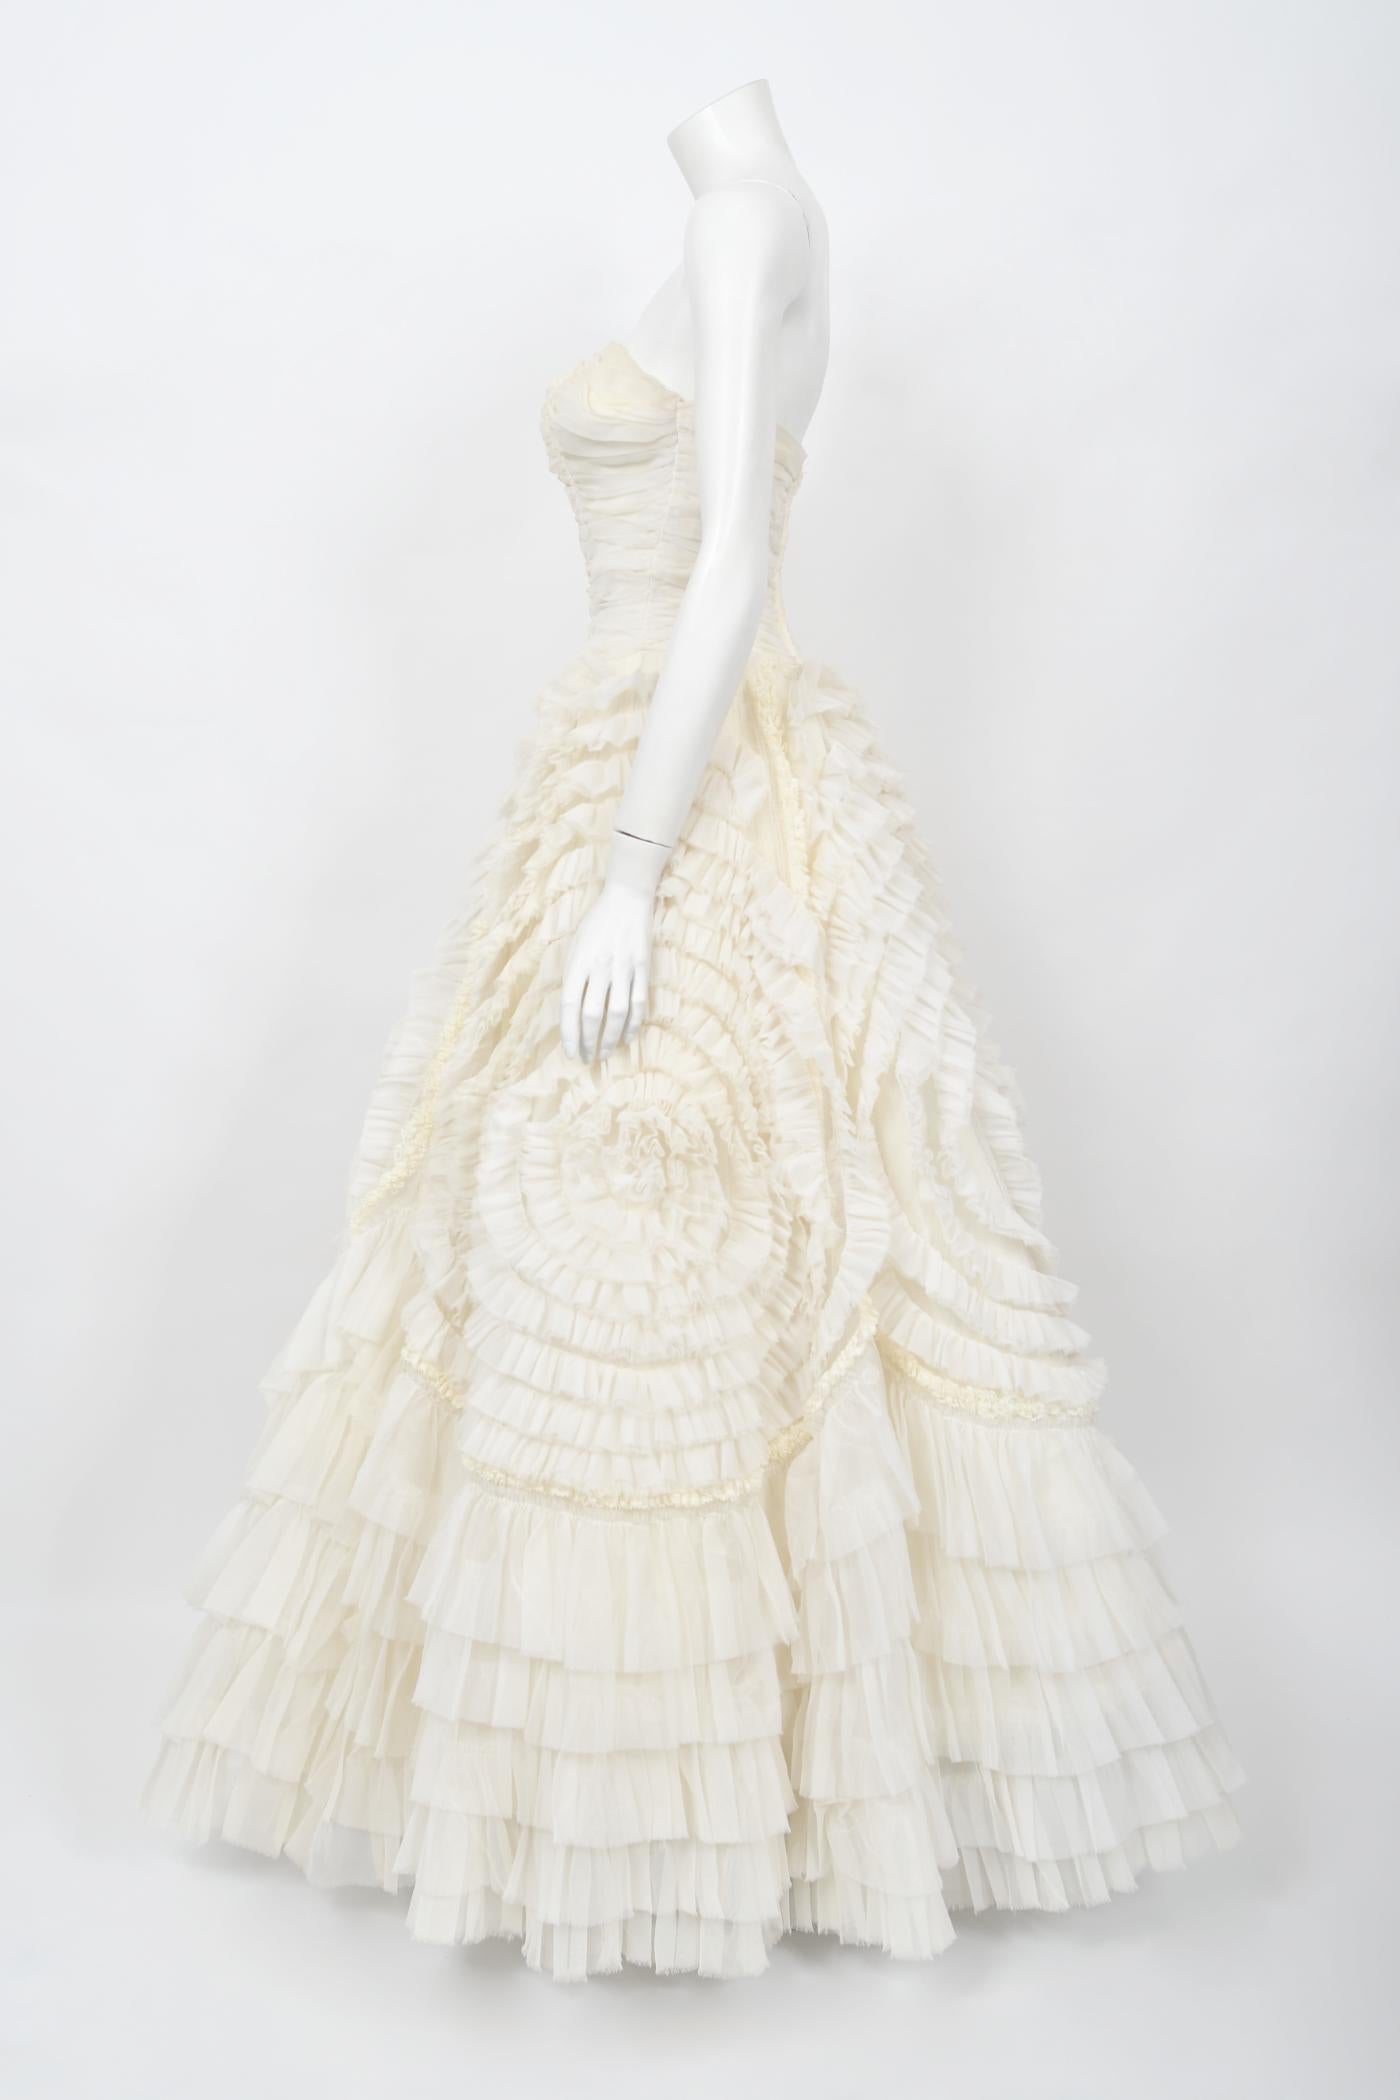 Vintage 1950's Elfenbein Chiffon trägerlos Tiered Ruffle voller Länge Hochzeitskleid  8